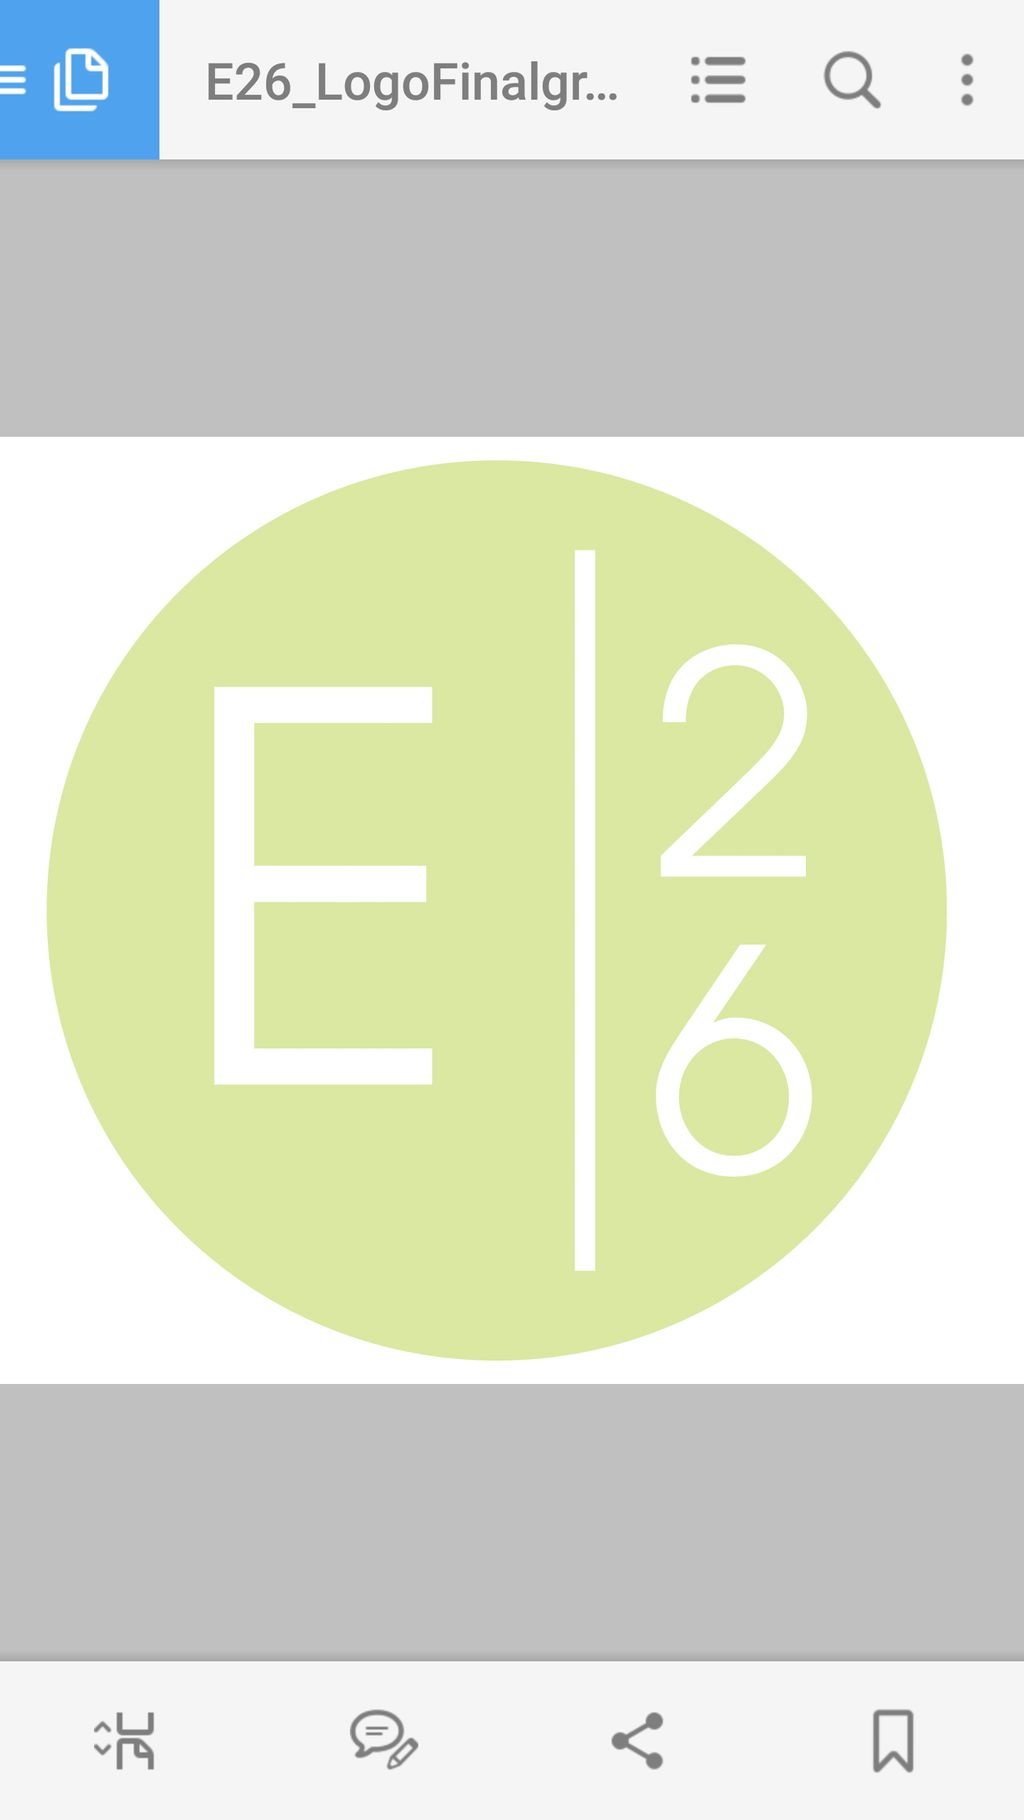 e26 design studio